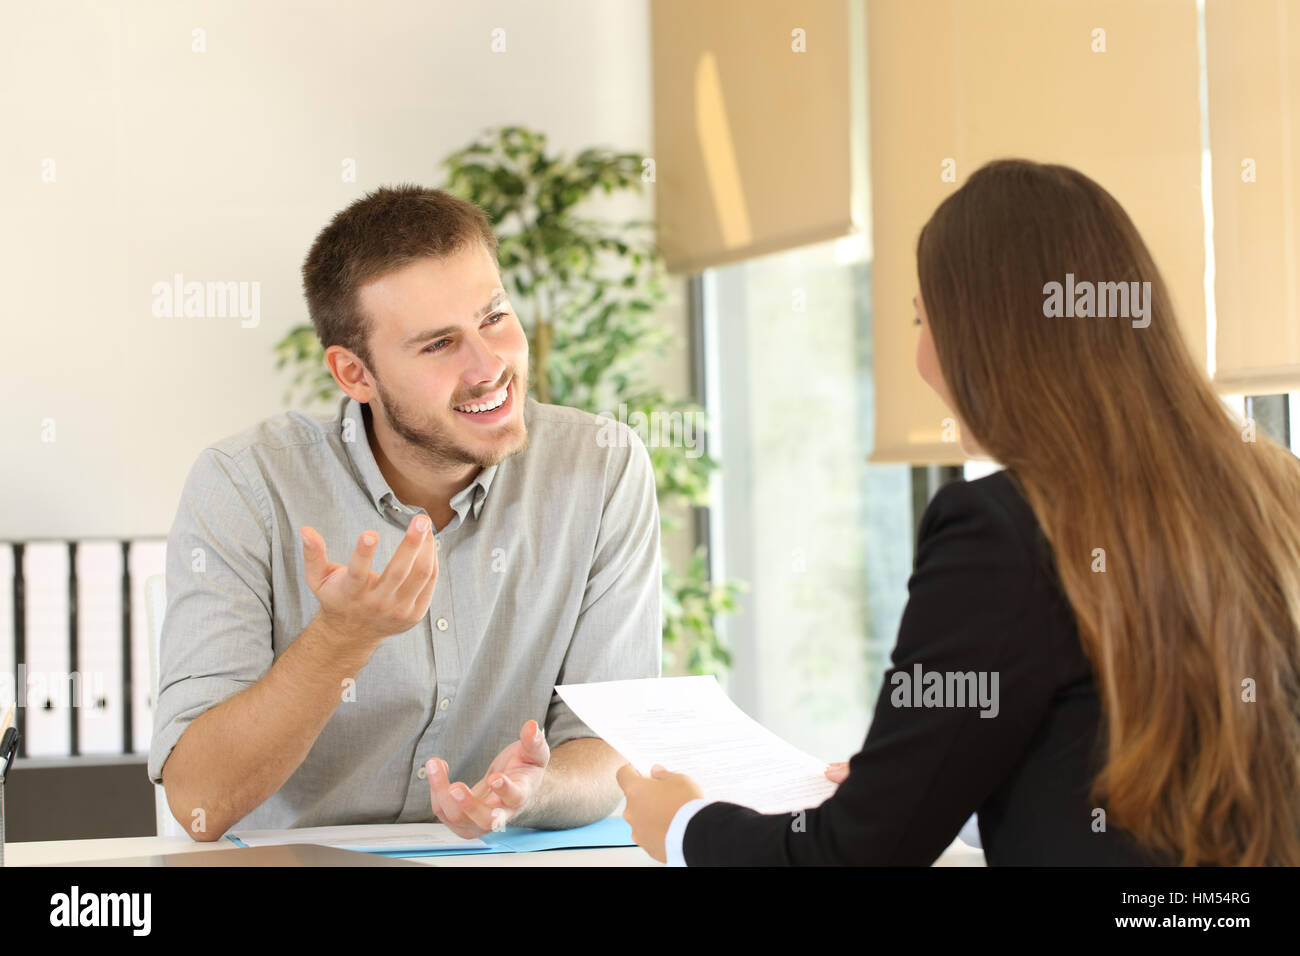 Zuversichtlich Mann im Gespräch mit seinem Gesprächspartner bei einem Vorstellungsgespräch Stockfoto